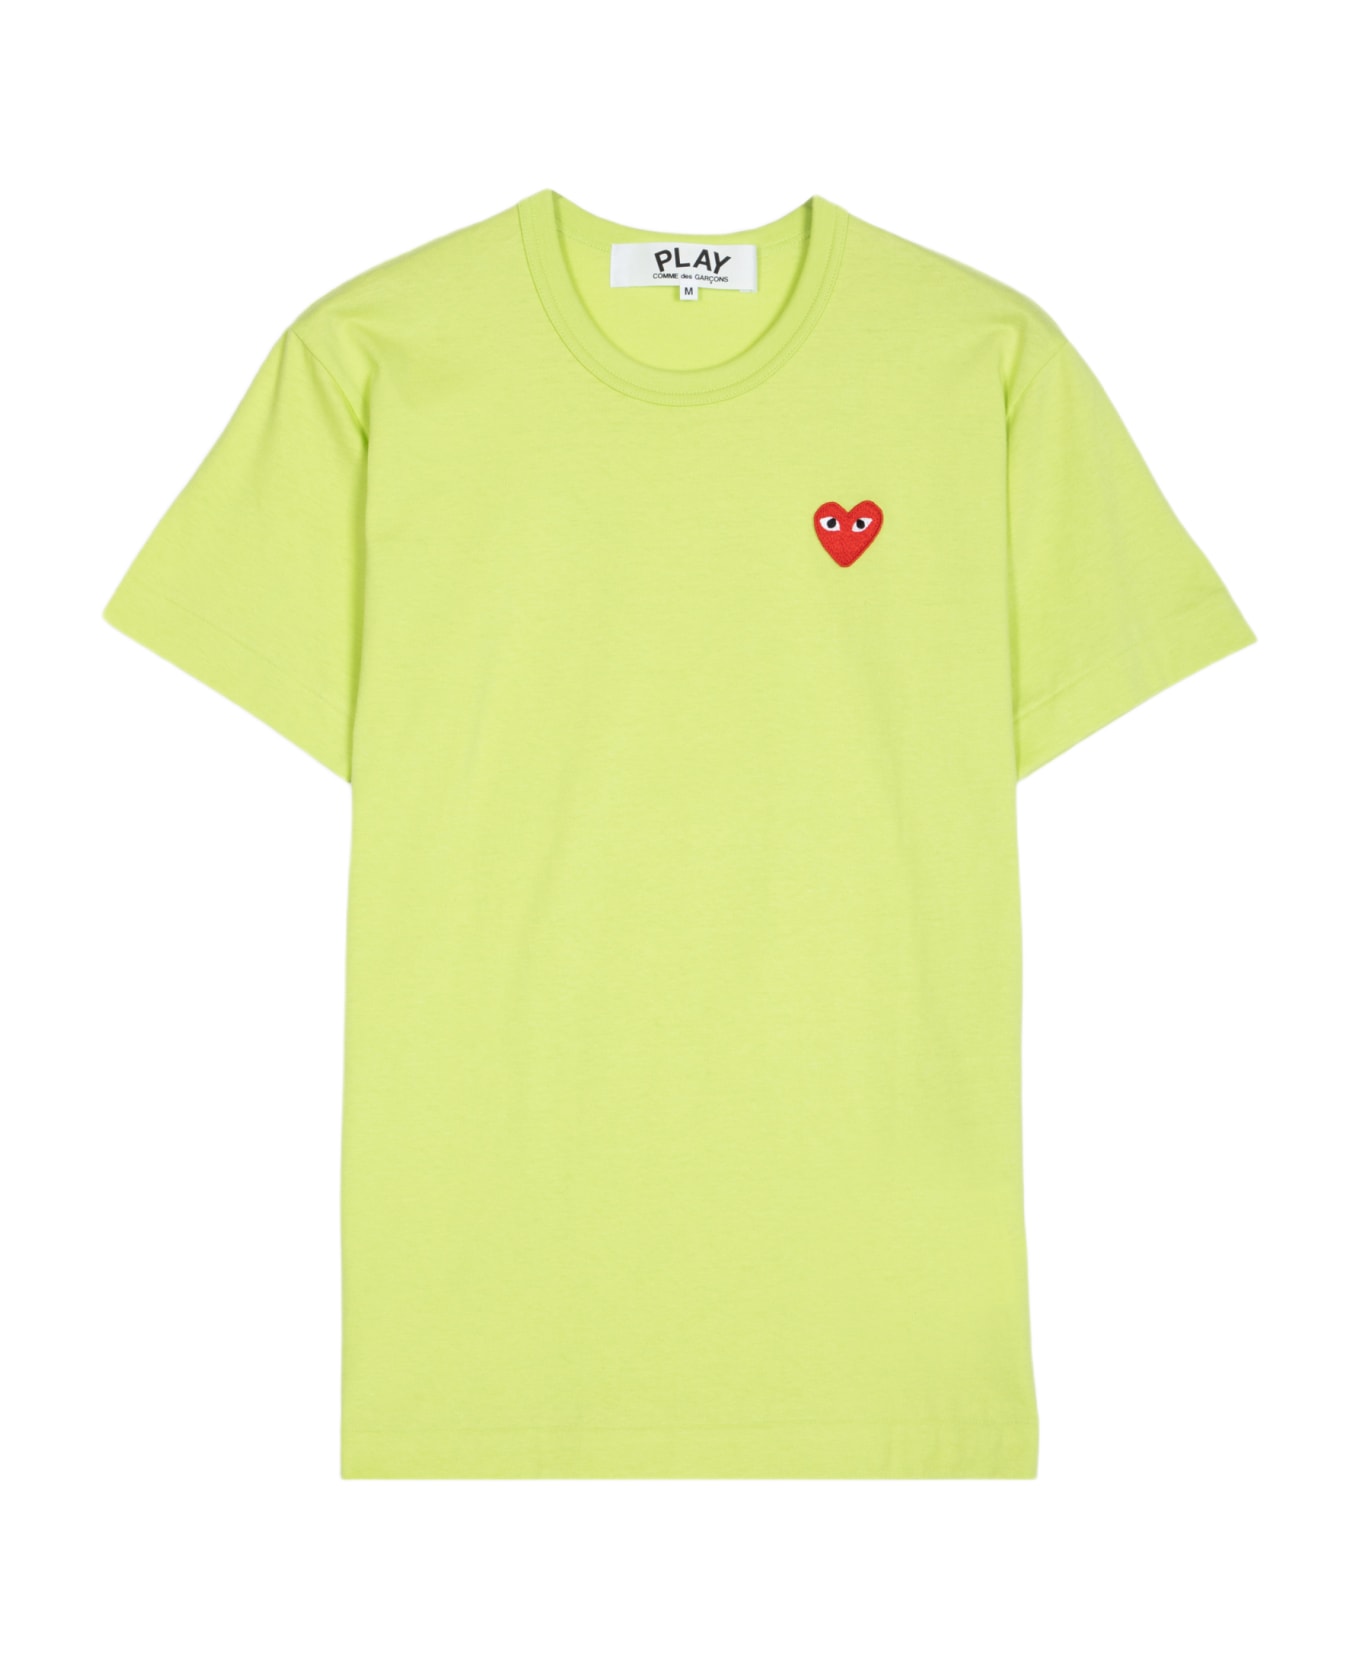 Comme des Garçons Play Mens T-shirt Short Sleeve Lime green t-shirt with big heart patch - Verde